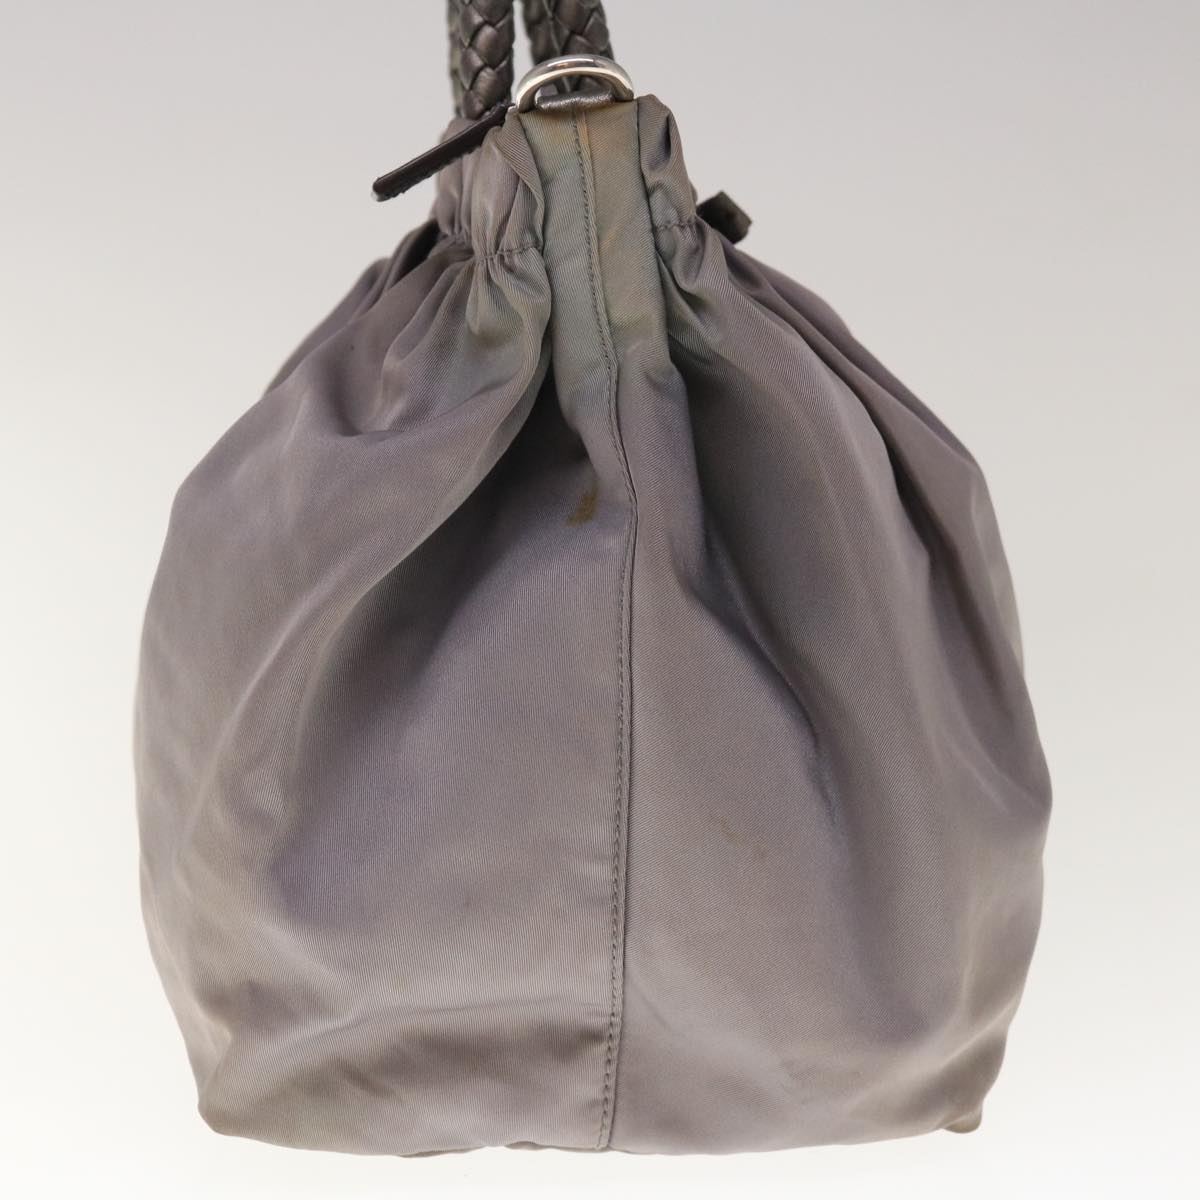 PRADA Hand Bag Nylon 2way Gray Auth yk10519